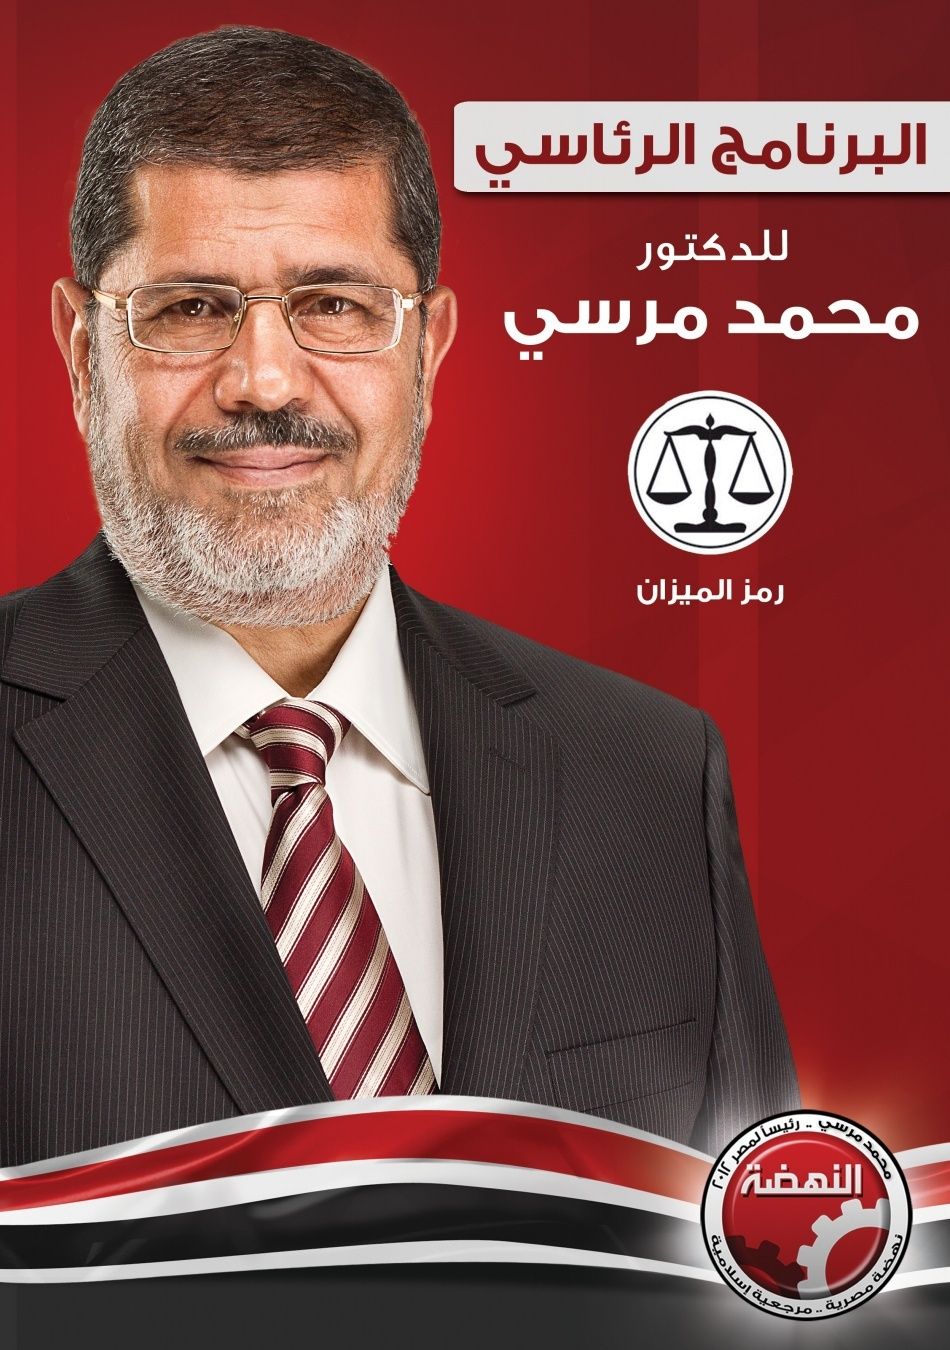 الان وبكل انفراد تام حمل على جهازك  كتاب برنامج المرشح الرئاسي محمد مرسي ( مشروع النهضـــة)   2012-011